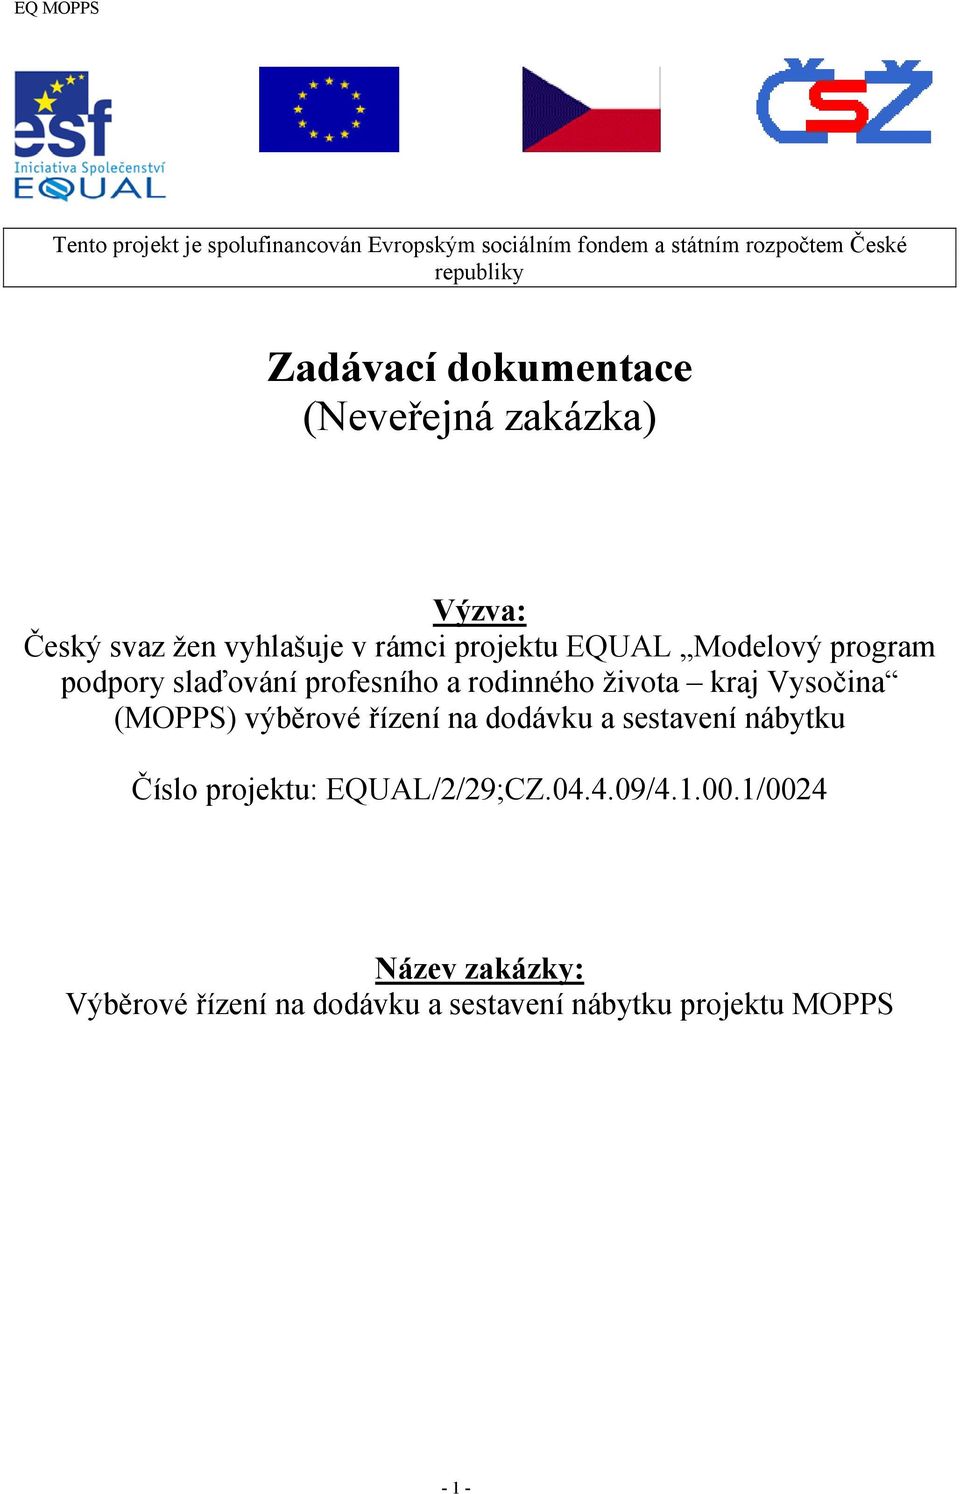 slaďování profesního a rodinného života kraj Vysočina (MOPPS) výběrové řízení na dodávku a sestavení nábytku